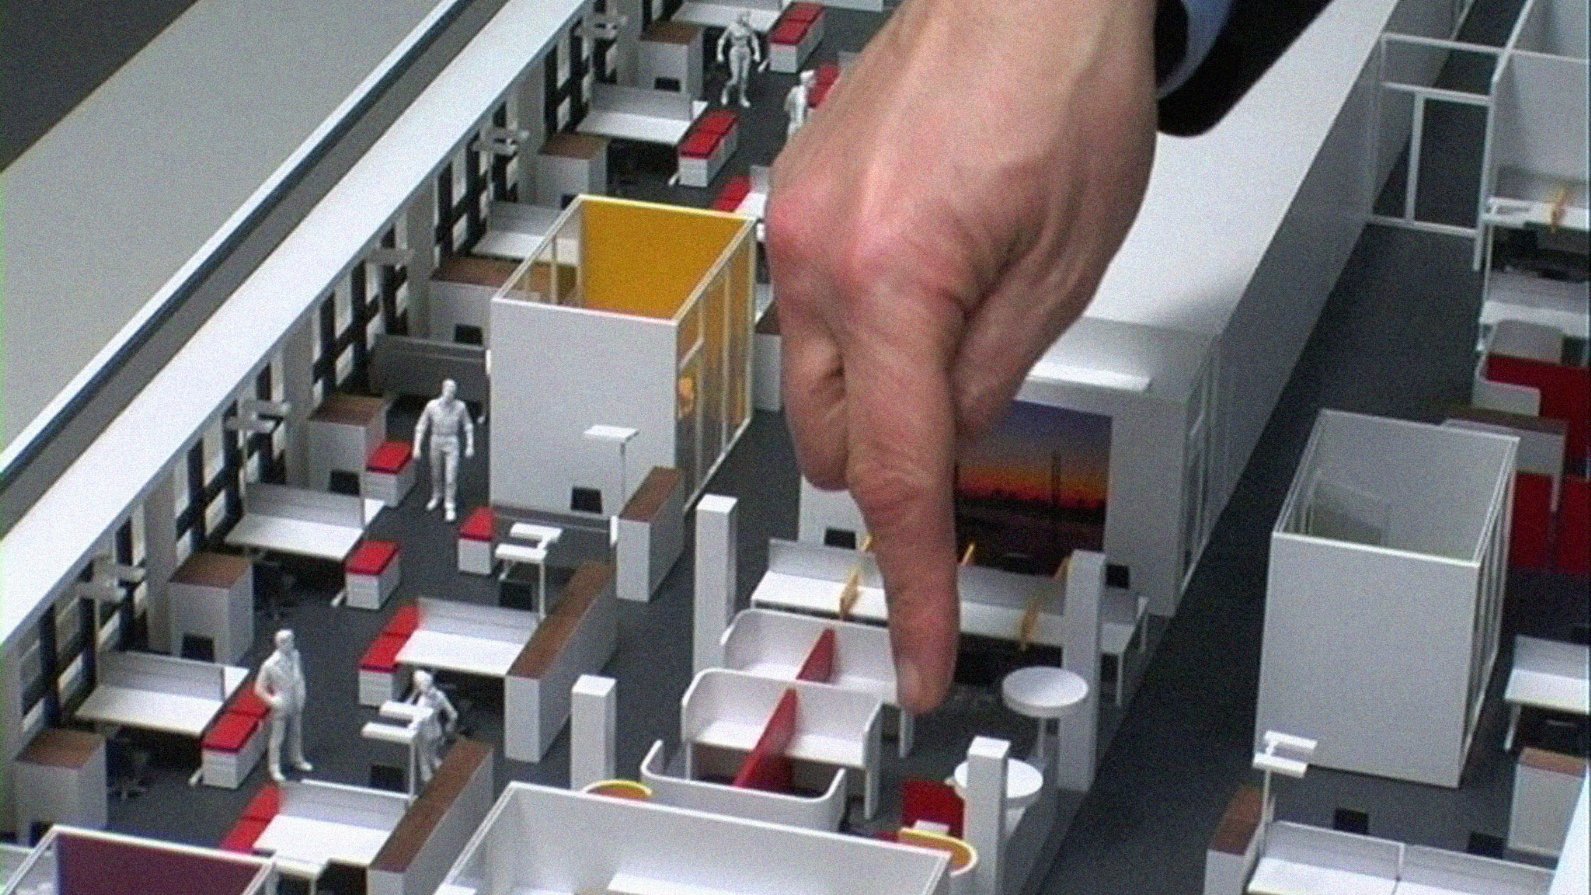 Filmstill aus "A New Product" von Harun Farocki, eine Hand zeigt auf ein kleines Element in der Innenansicht eines 3D Miniaturbüro-Modells